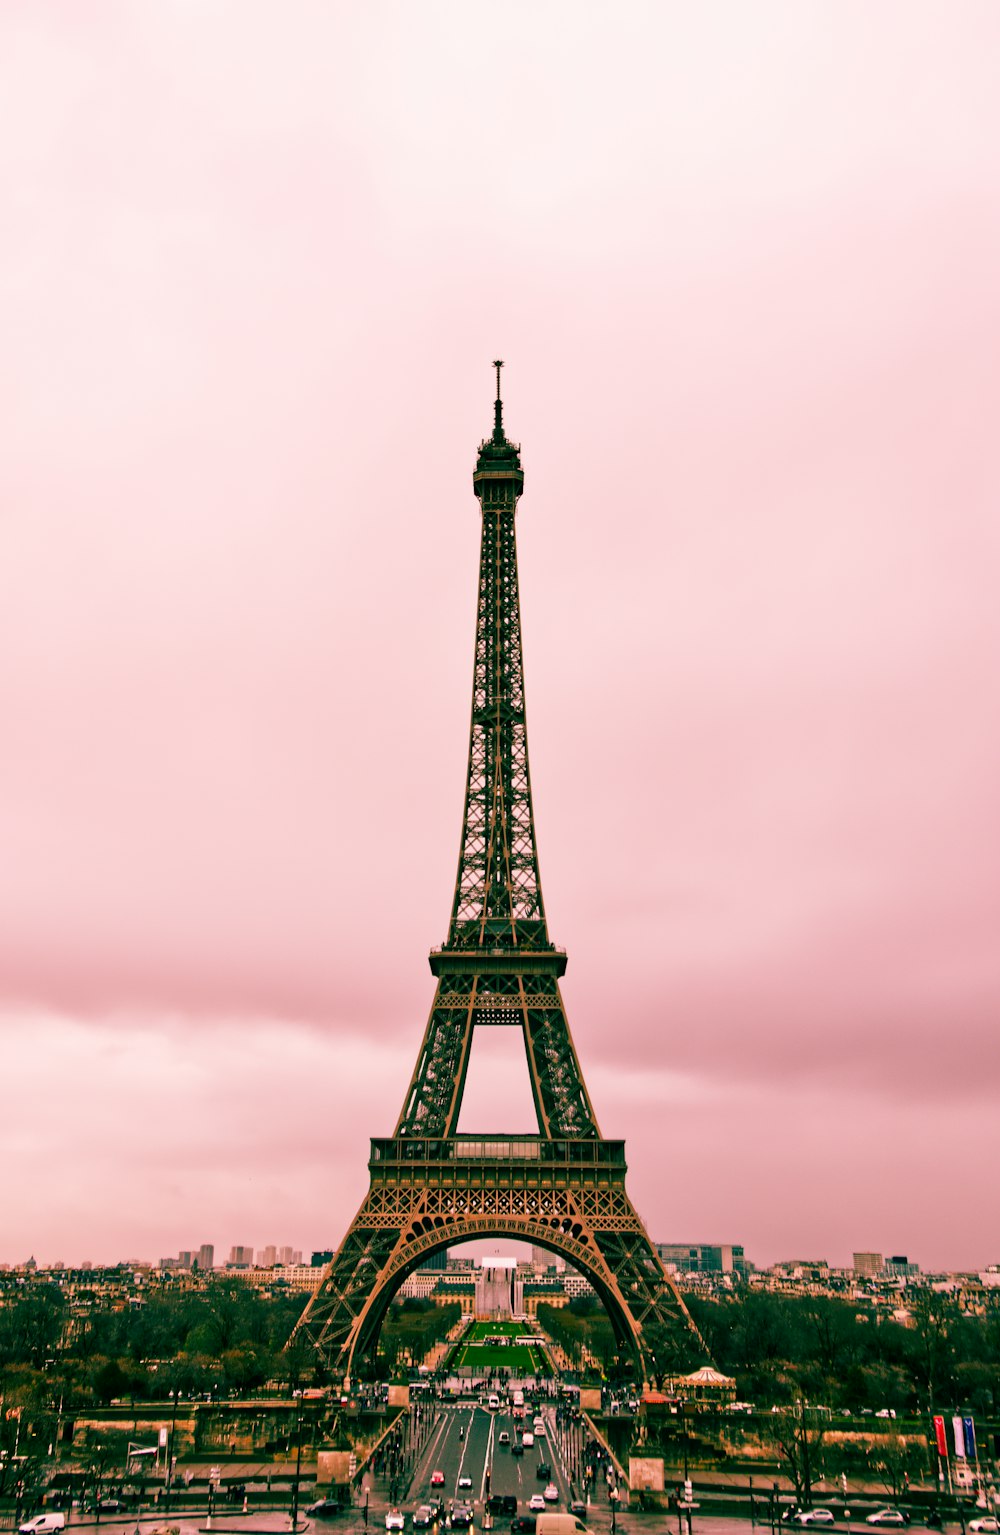 Torre Eiffel bajo el cielo gris